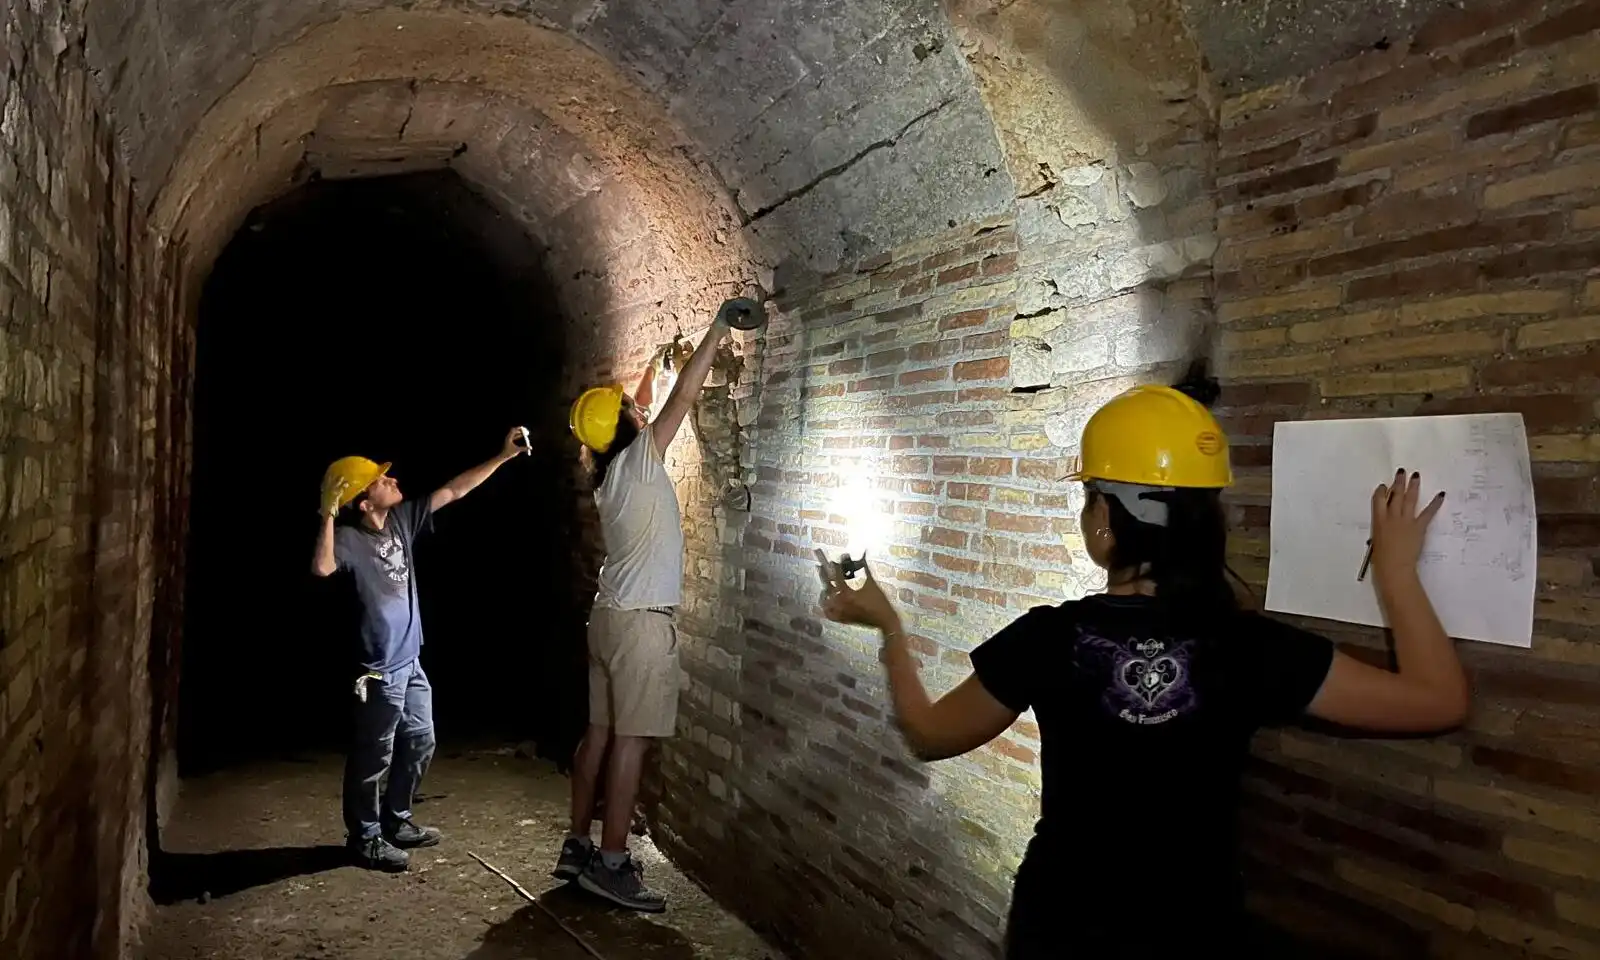 Nuovi scavi archeologici ad Anzio a caccia di antiche strutture sotterranee